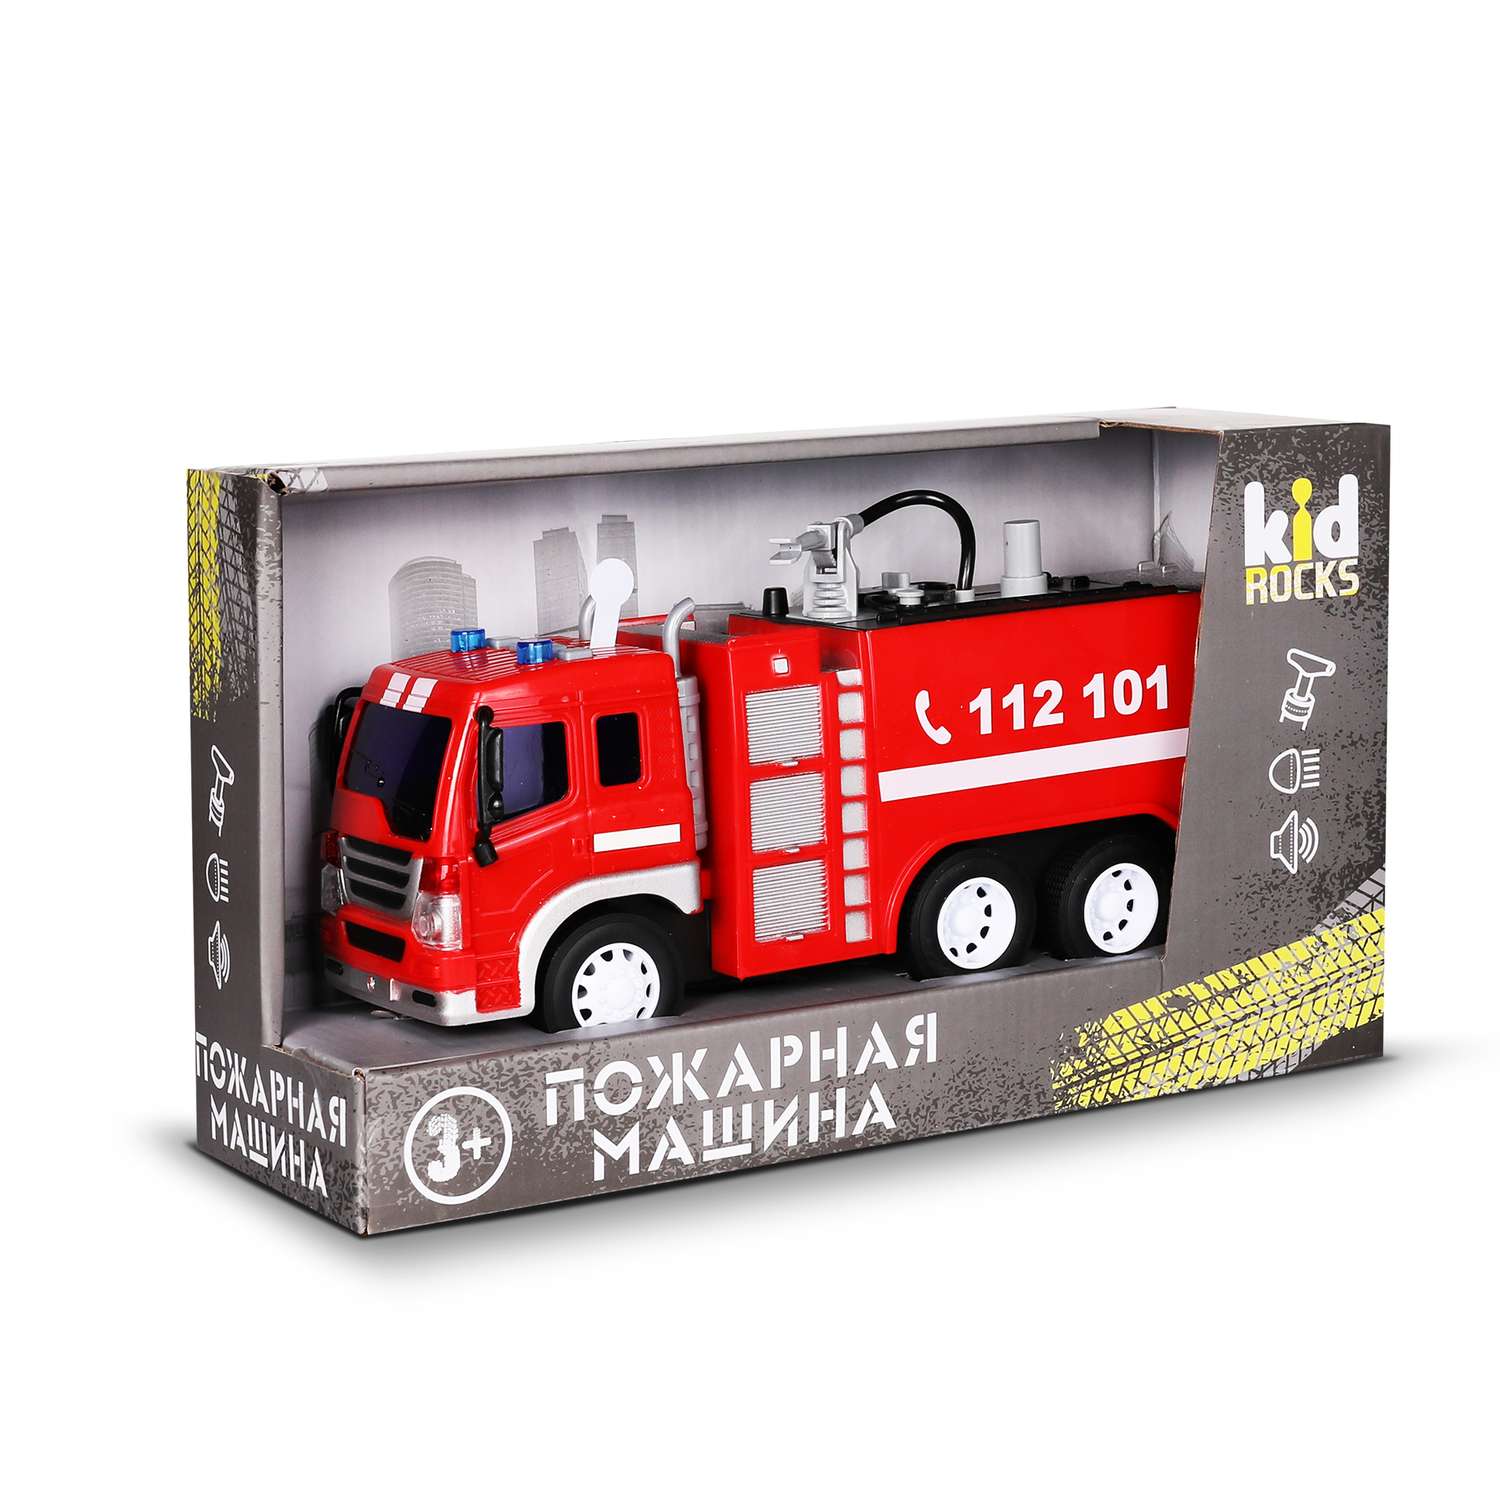 Модель Kid Rocks Пожарная машина масштаб 1:16 со звуком и светом YK-2110 - фото 2